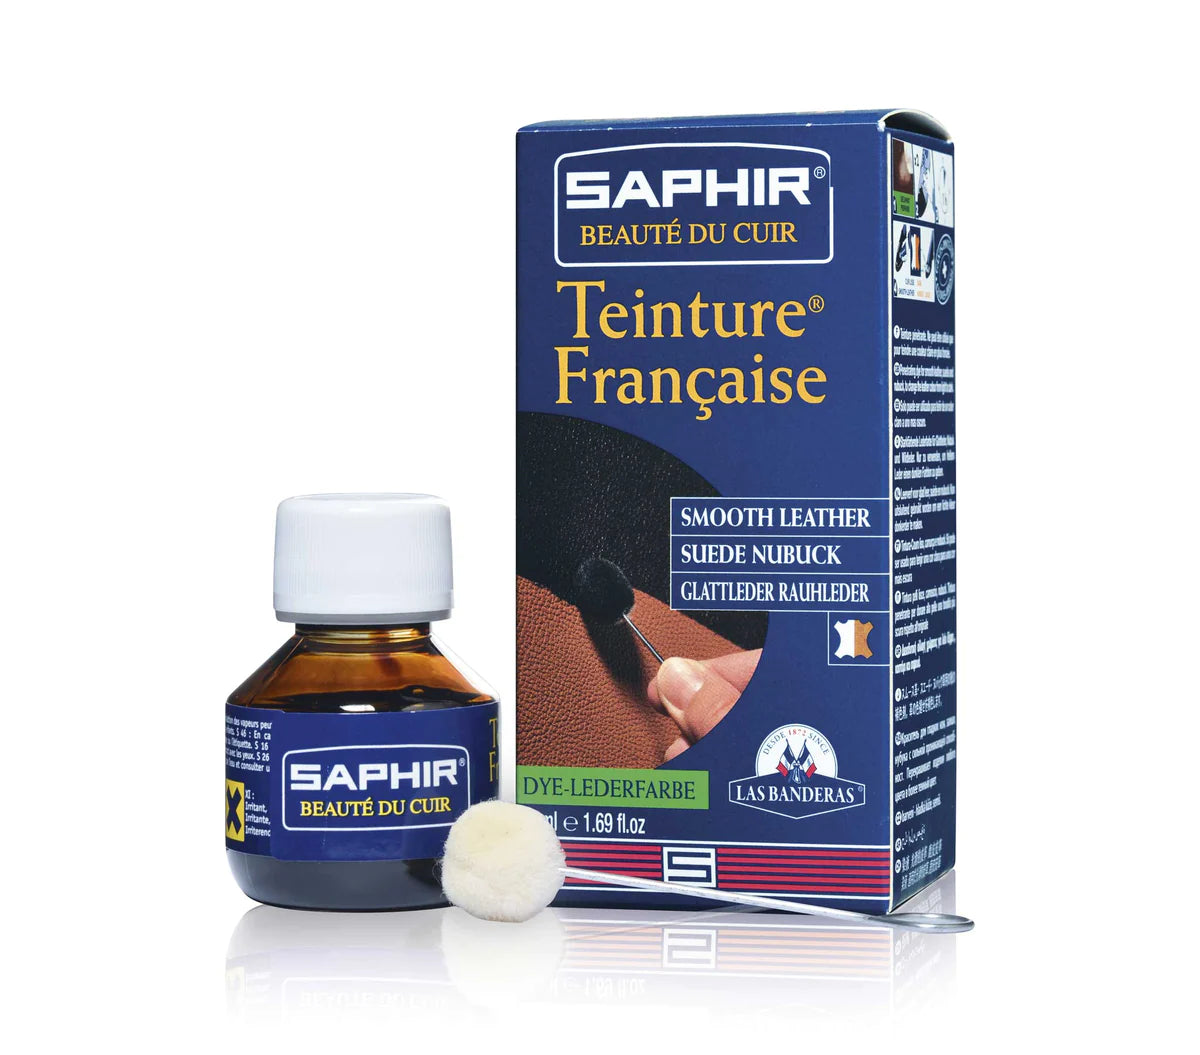 Saphir Teinture Francaise